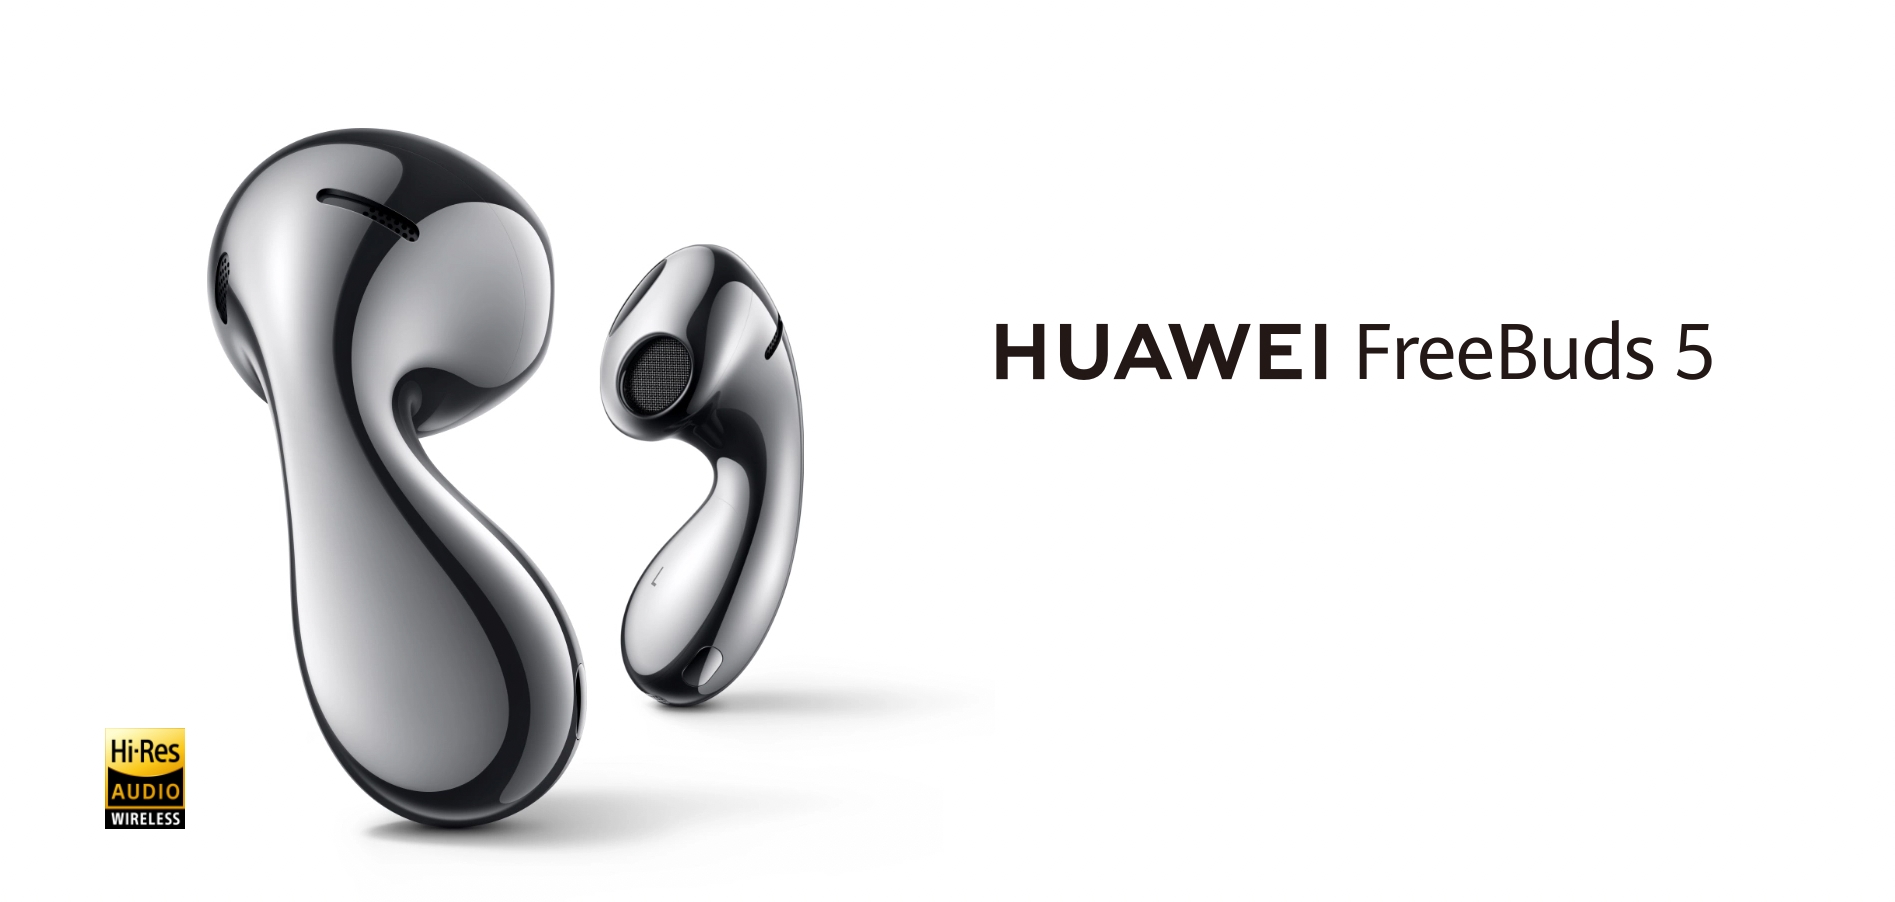 Les Huawei FreeBuds 5 arrivent en Europe : Des écouteurs TWS au design inhabituel et un ANC hybride pour 159 €.